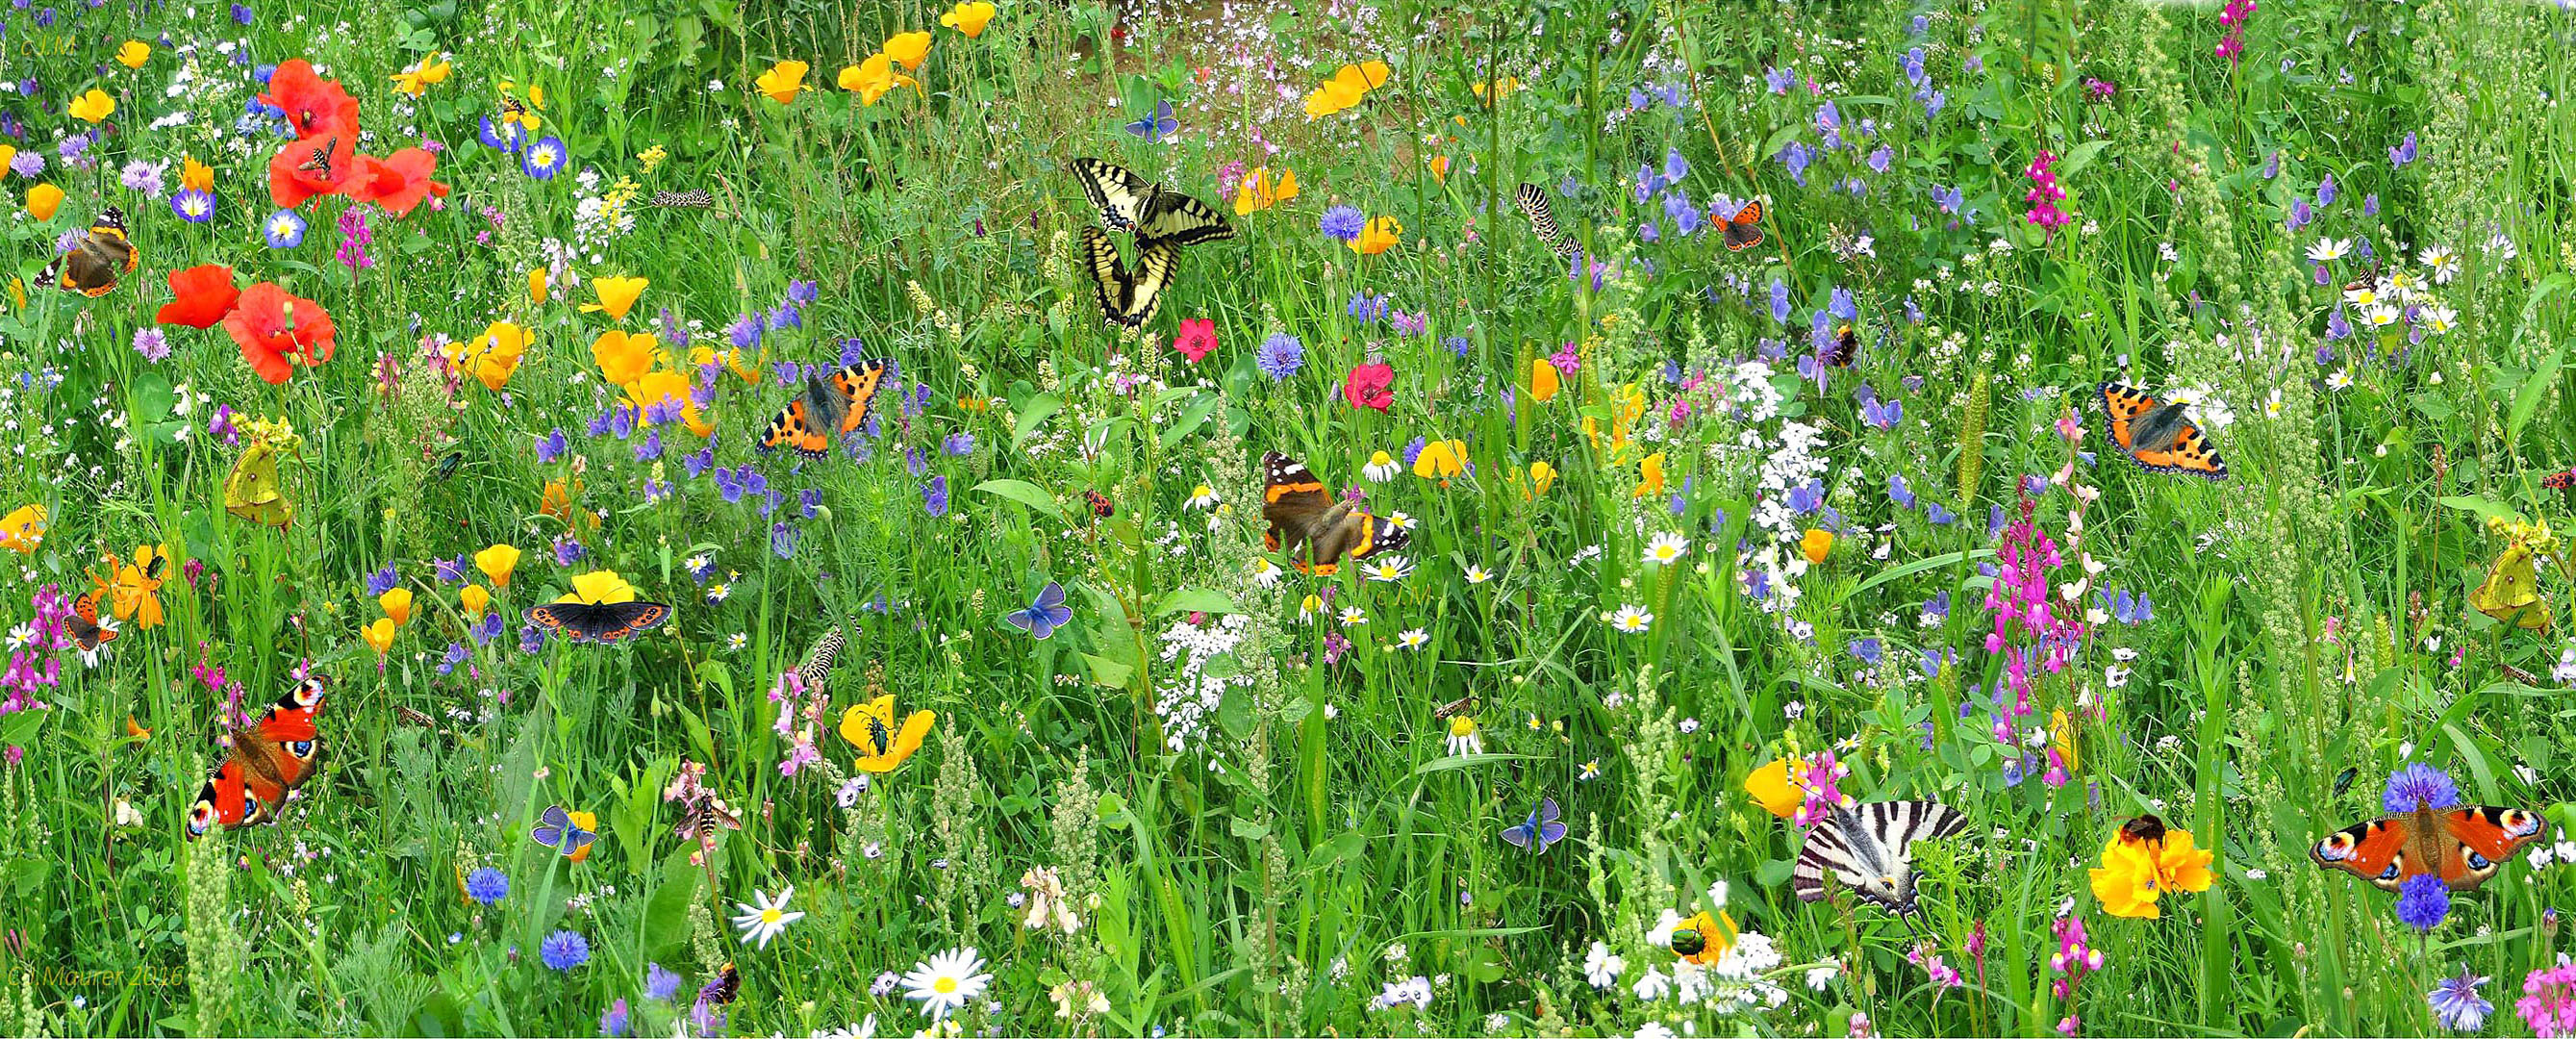 Blumenwiese-mit-Schmetterlingen und Insekten